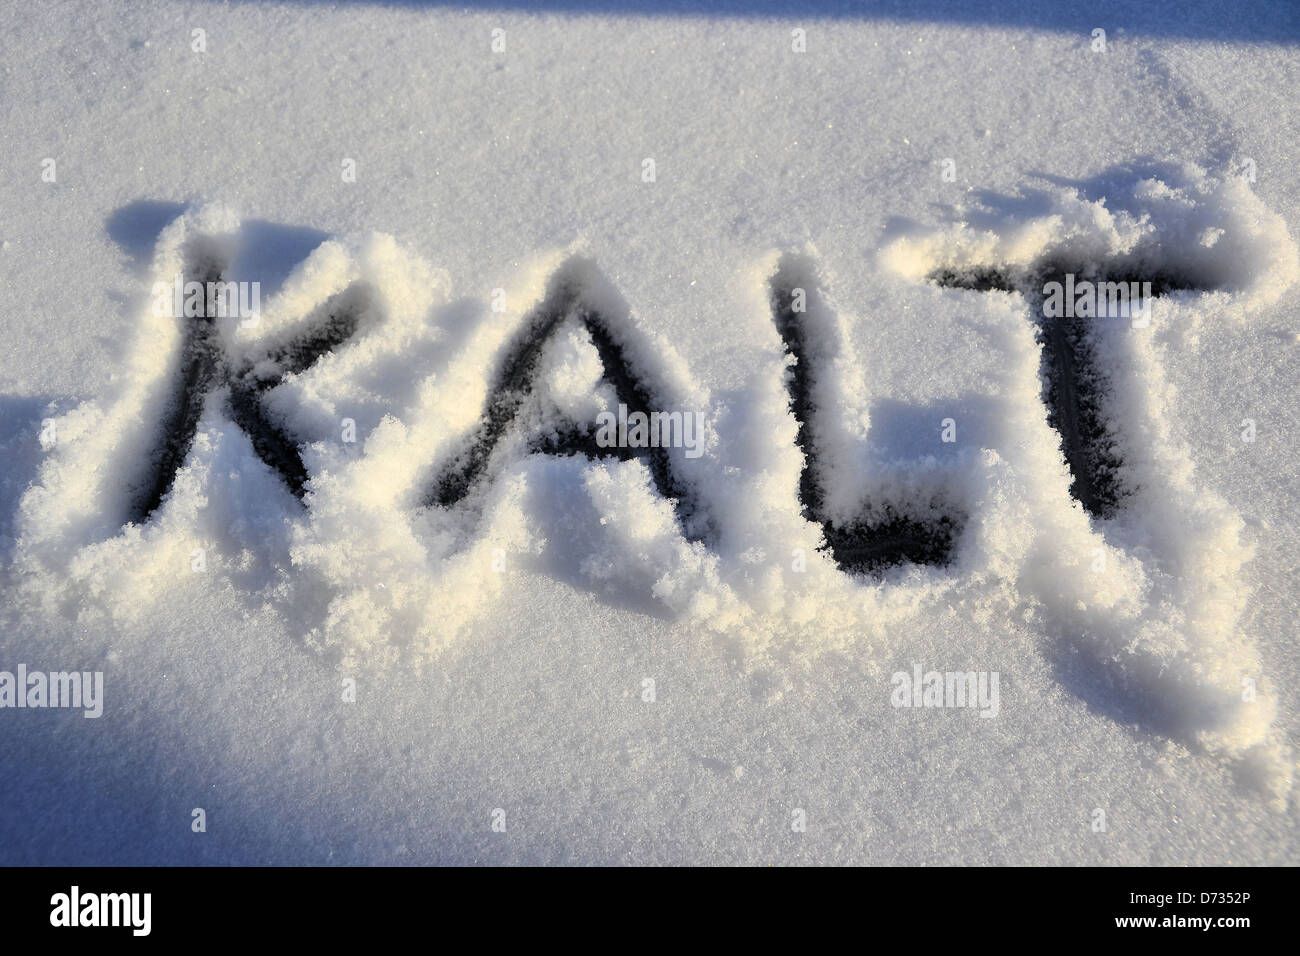 Das Wort kalt ist in den Schnee geschrieben. Stockfoto